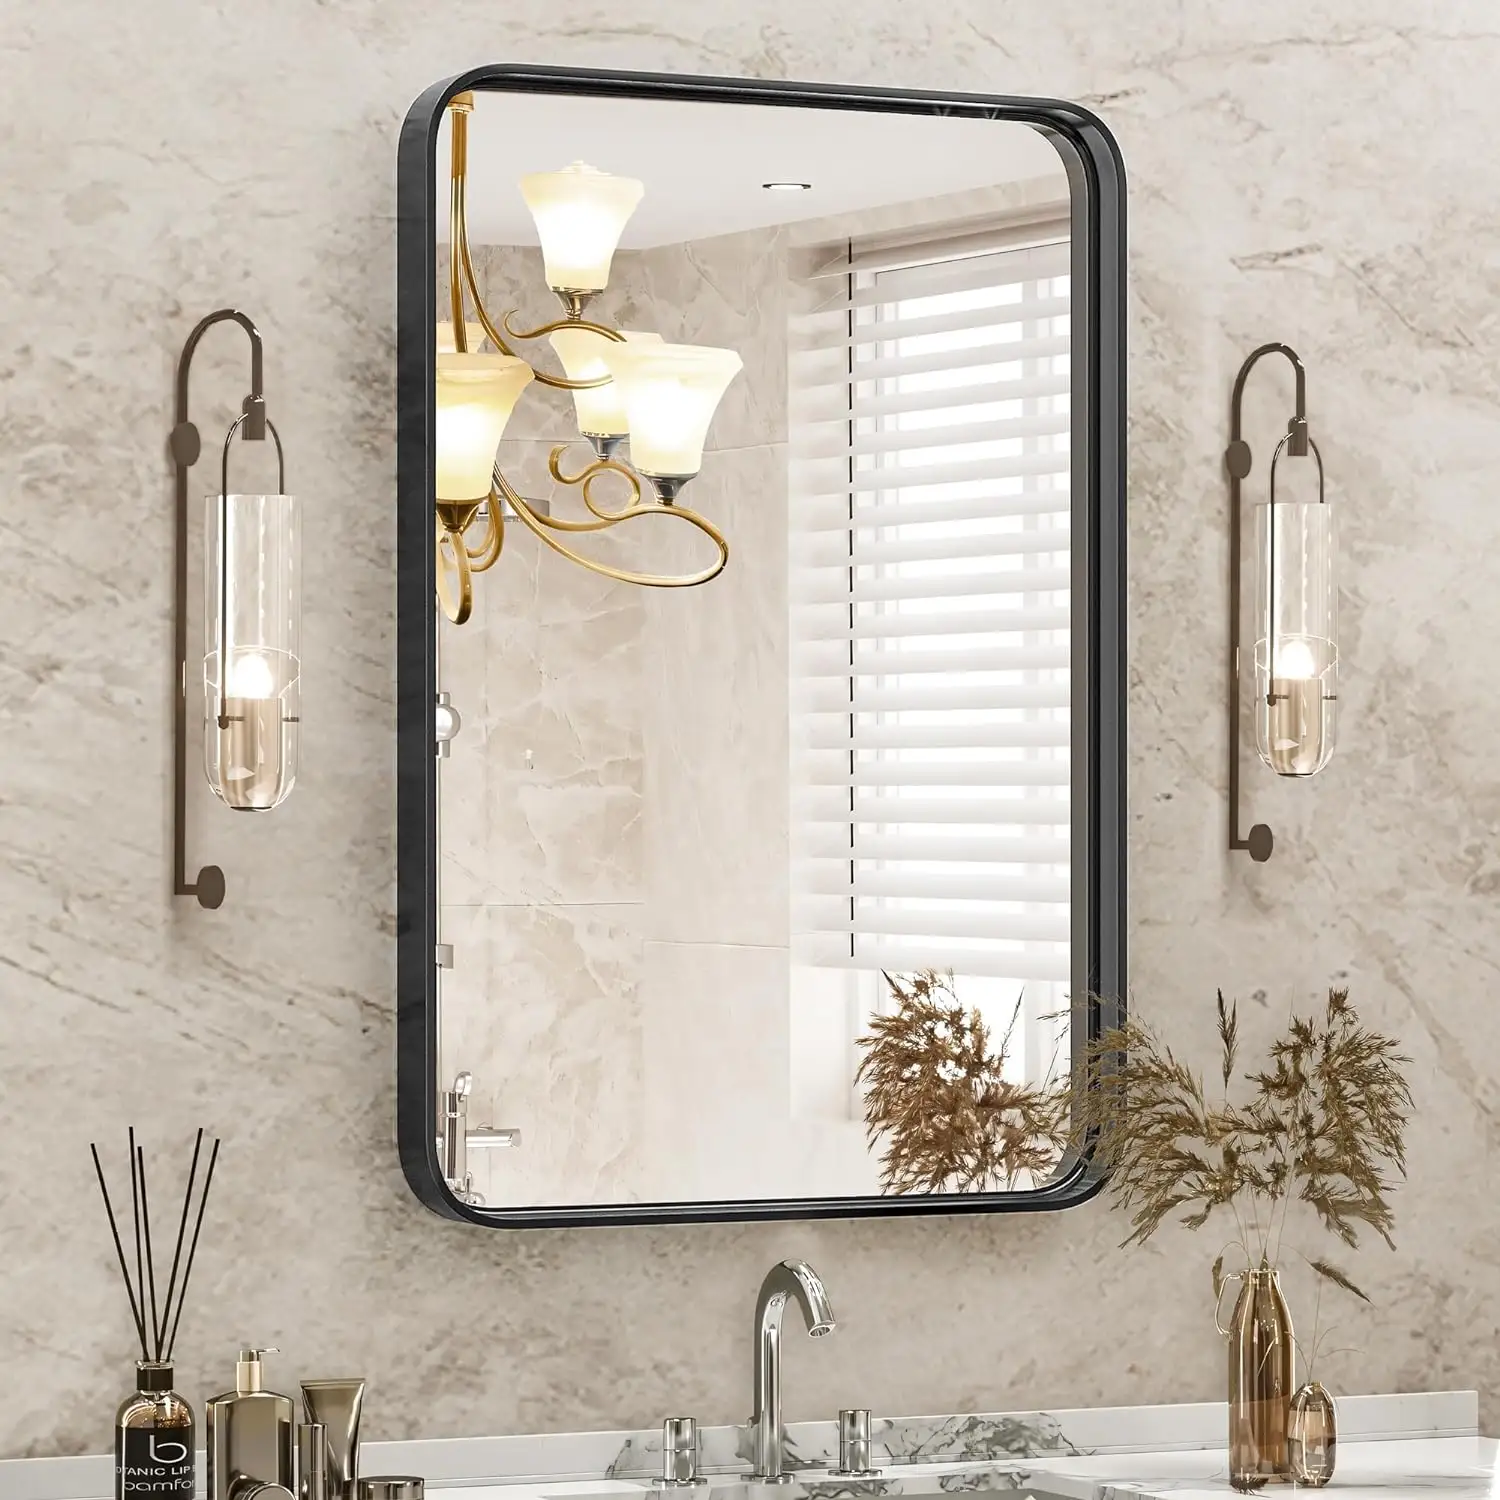 مرآة مكياج بإطار معدني للحمام، مرايا تزيين للحمام فوق الحوض، مرآة كبيرة جدارية للتزيين، نوعان من التعليق